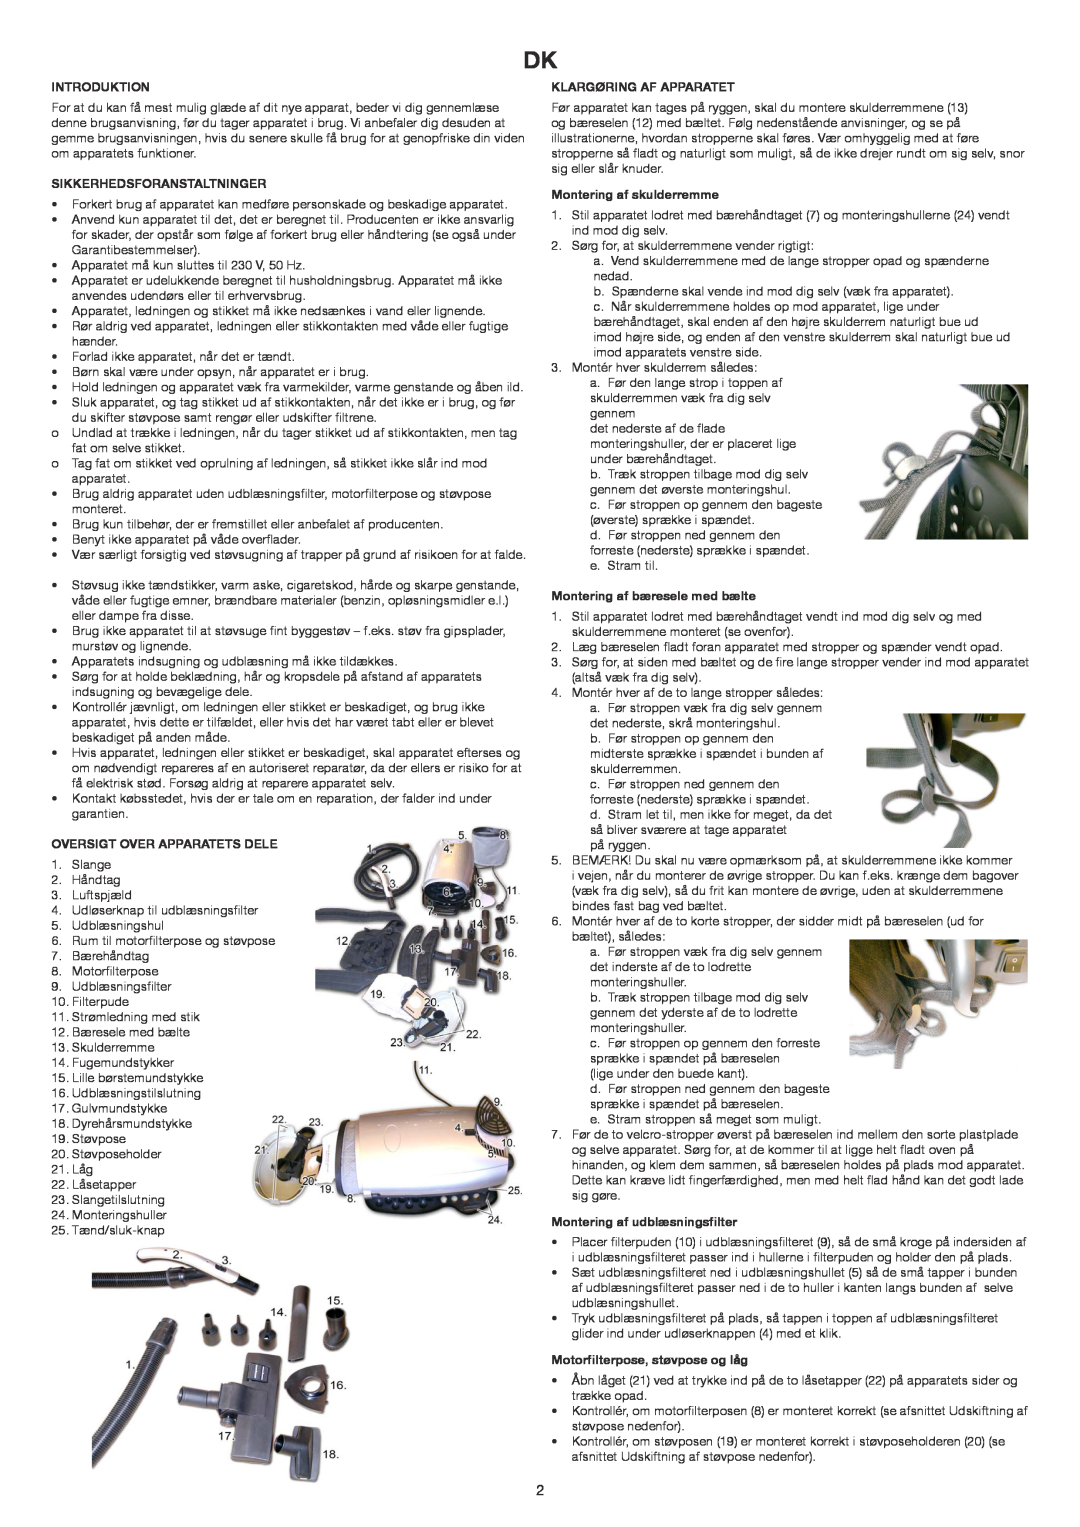 Melissa 240-006 manual Introduktion, Sikkerhedsforanstaltninger, Oversigt Over Apparatets Dele, Klargøring Af Apparatet 